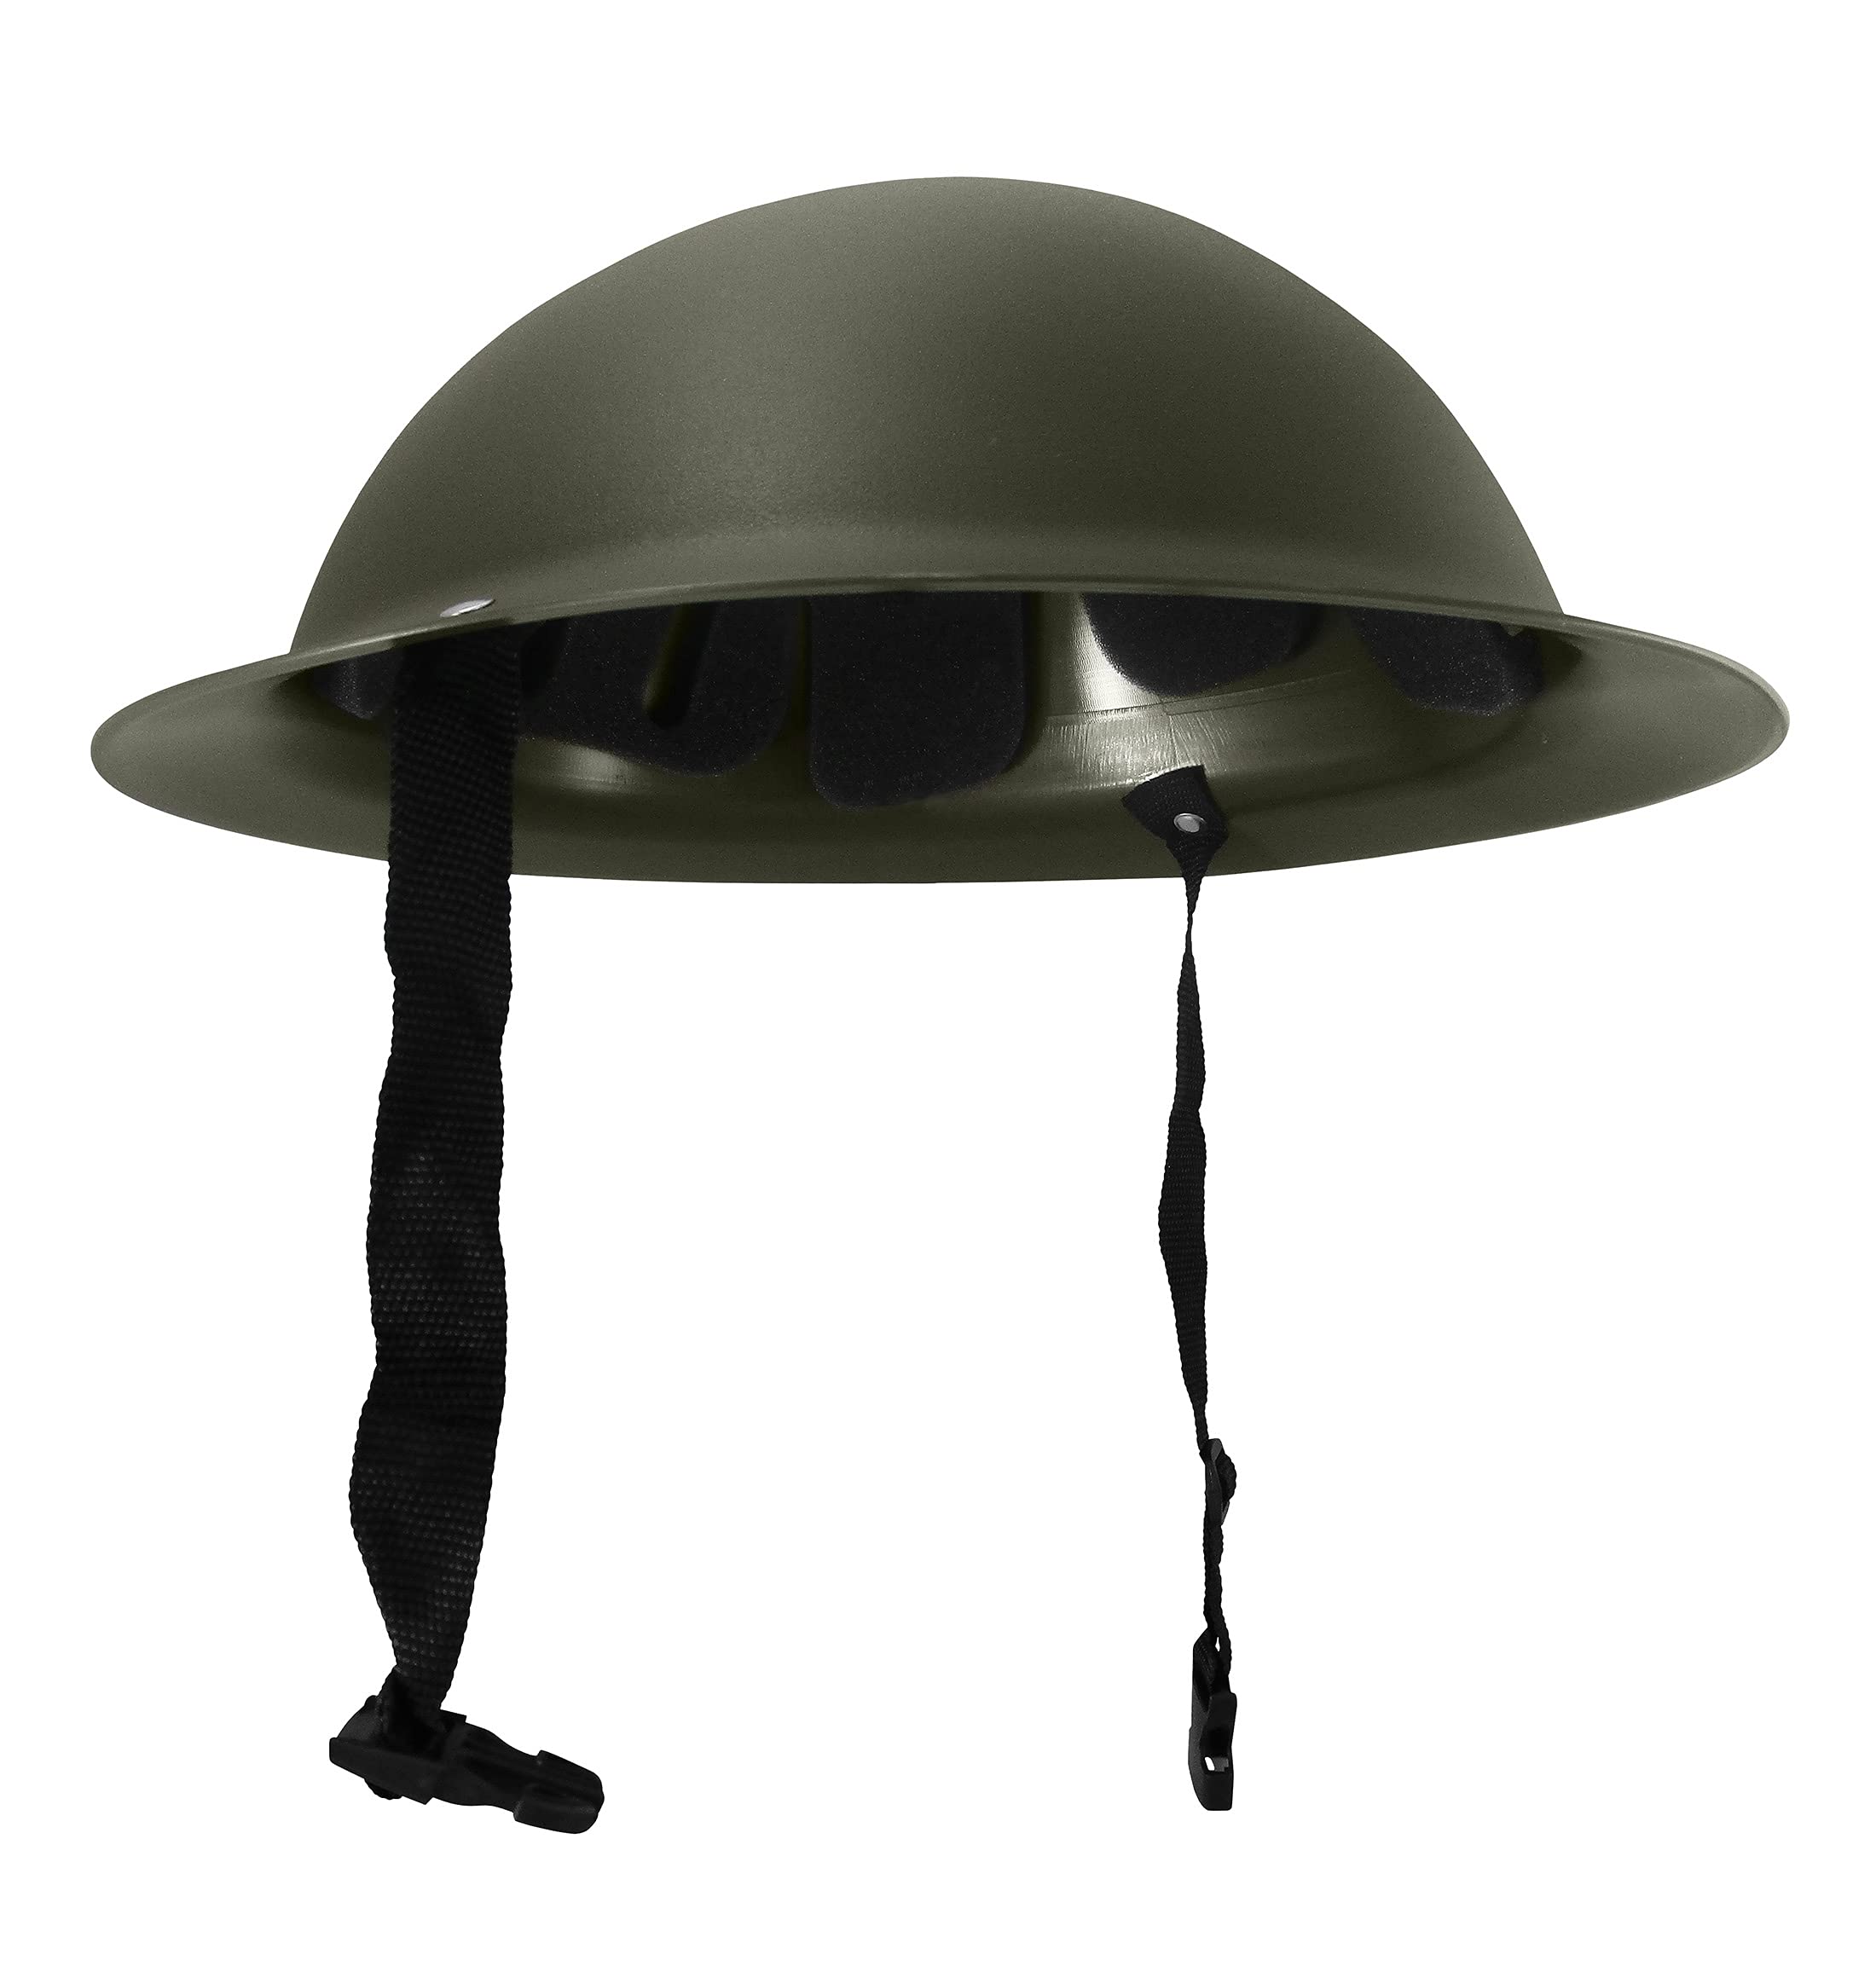 Army helmet costume - Có lẽ bạn đang muốn đóng vai một chiến sĩ quân đội? Tất cả có trong khoản phục trang “Army Helmet Costume” đấy! Hãy xem hình ảnh để tìm hiểu thêm về chiếc mũ sừng sững này!